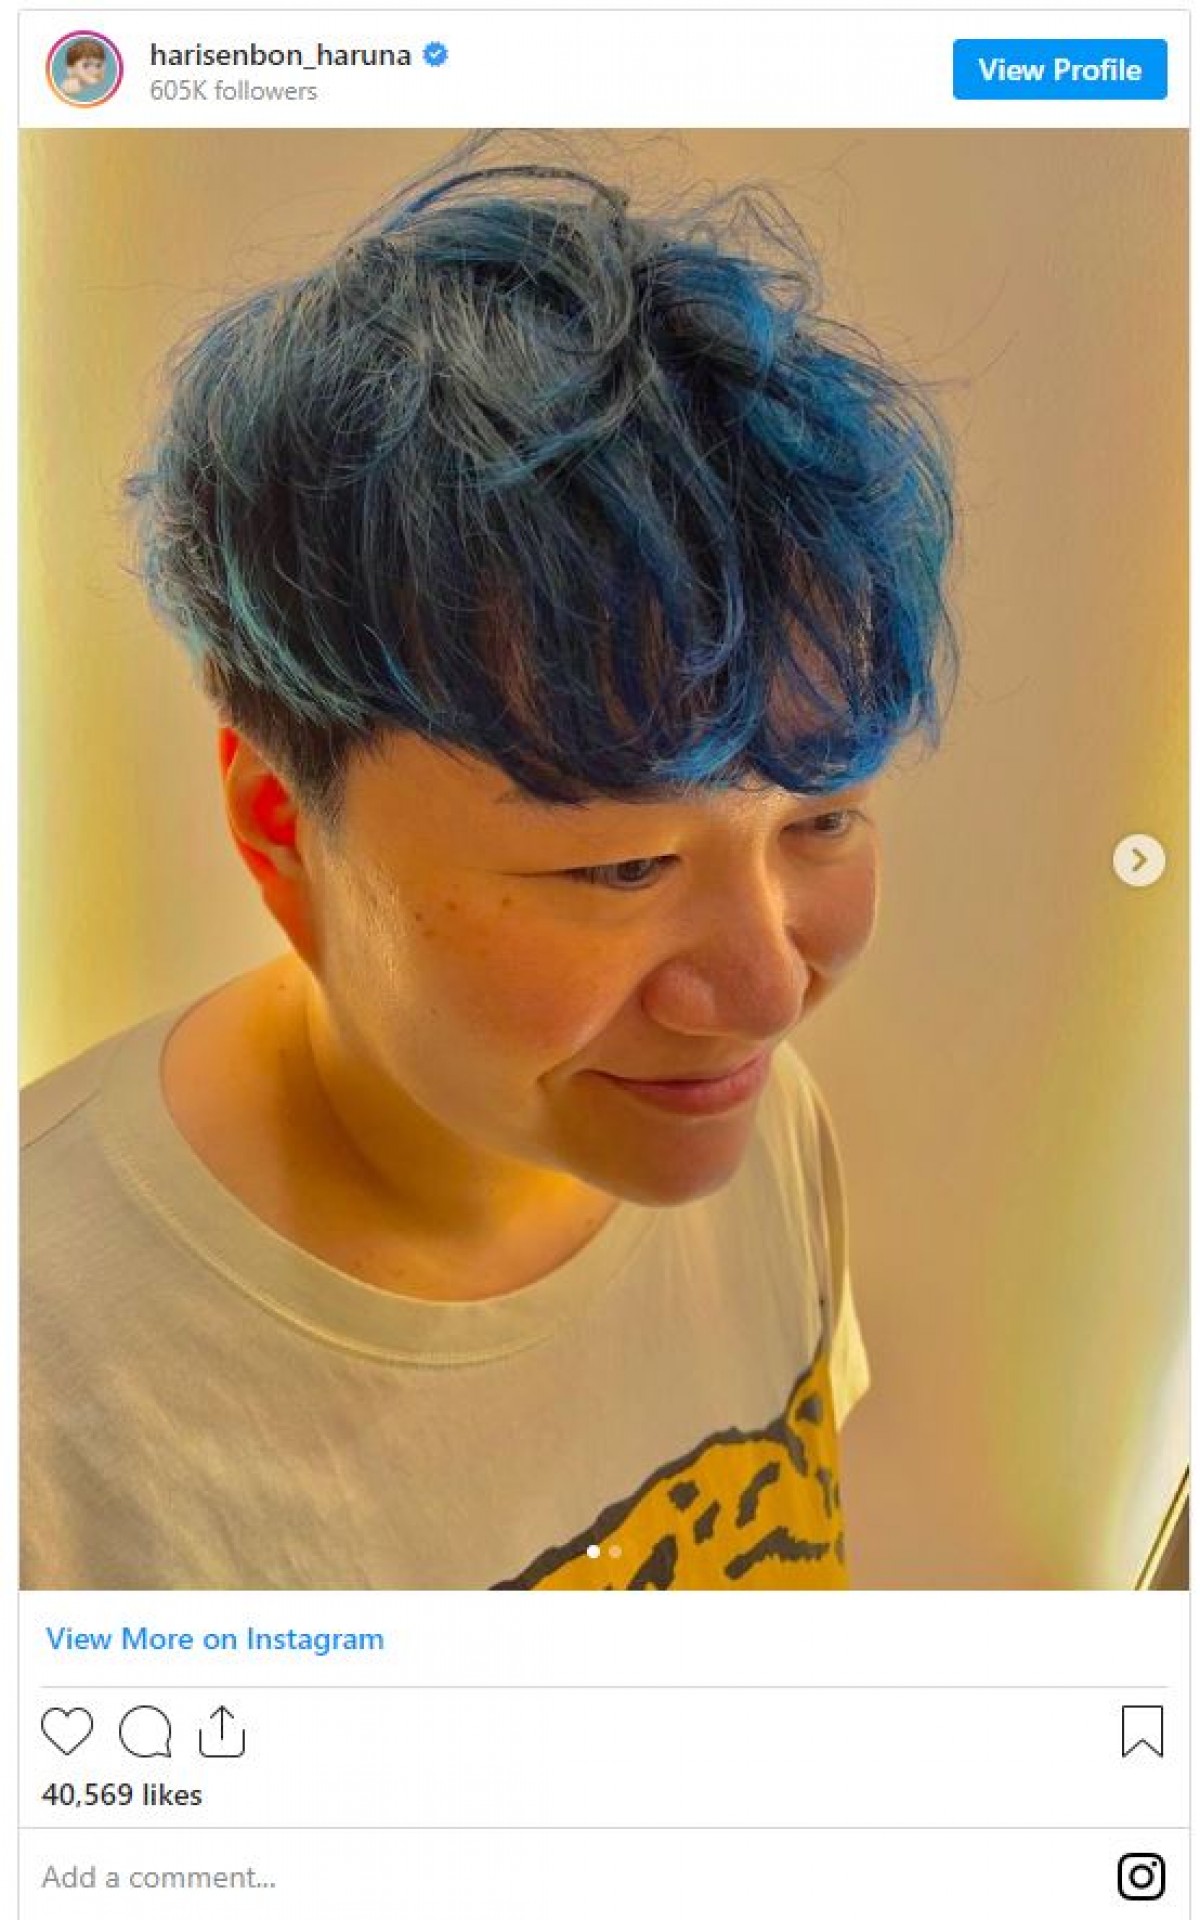 ハリセンボン春菜、真っ青ヘア＆オレンジヘア公開「BTSみたいで可愛い」の声